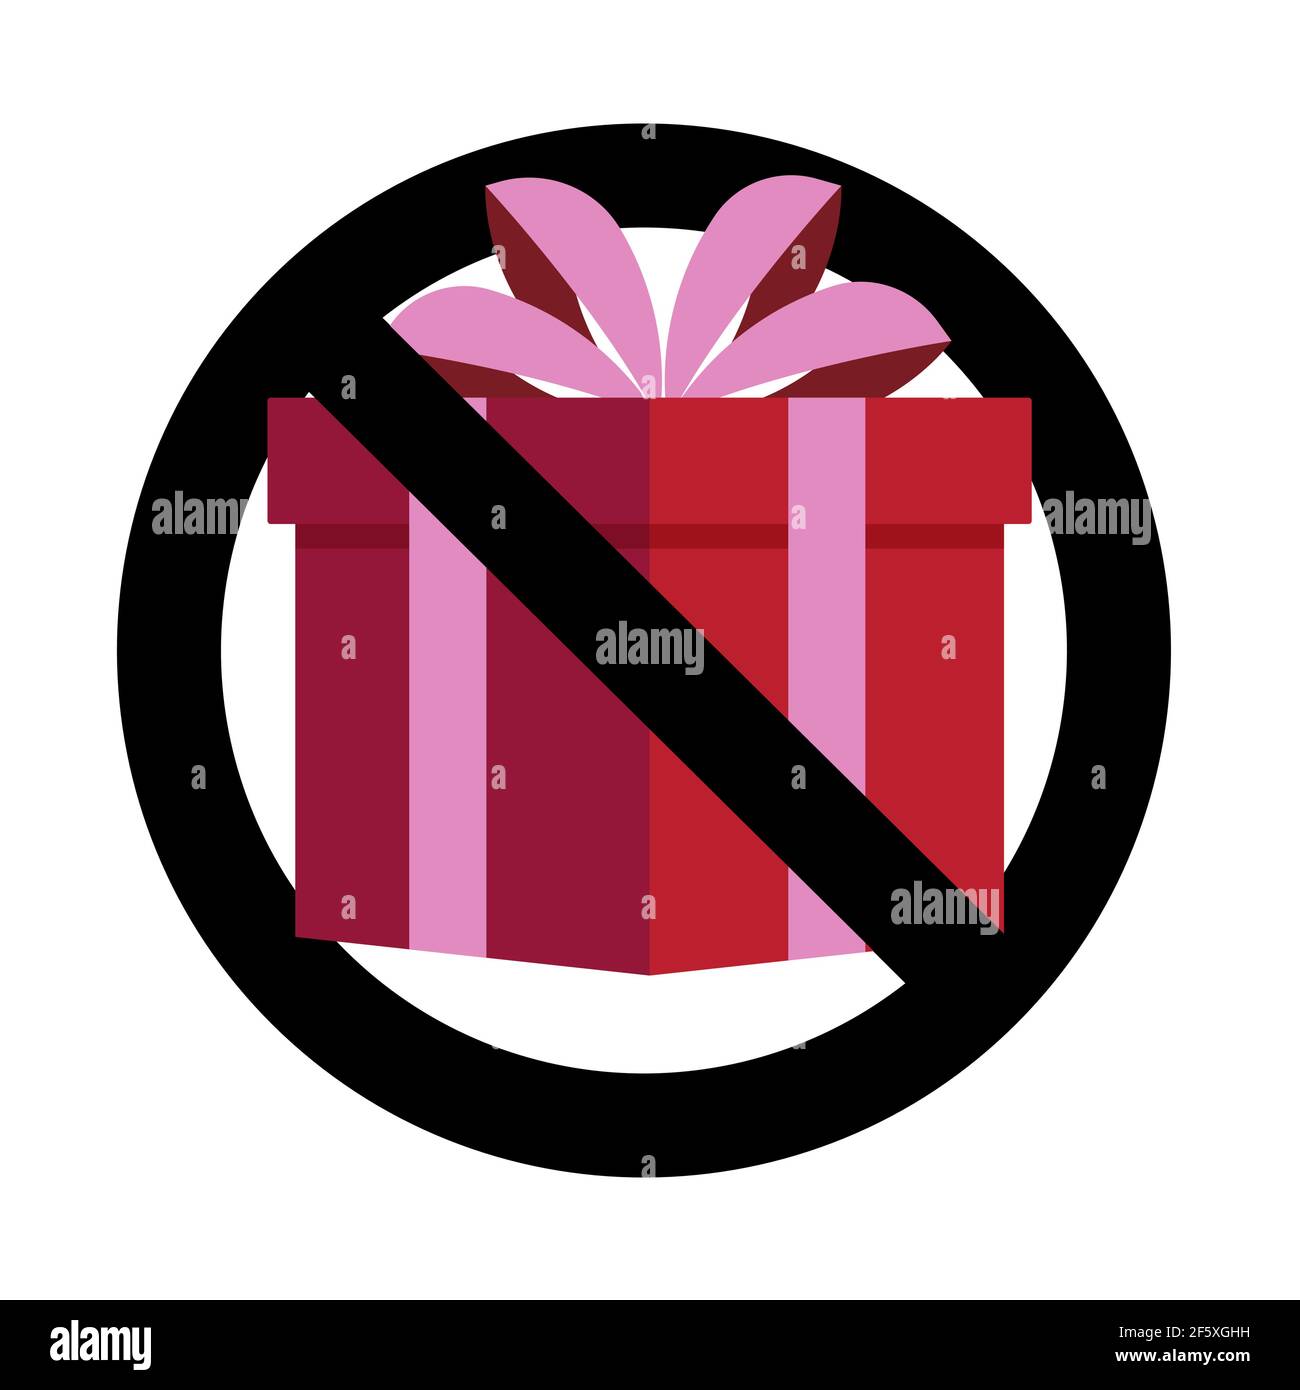 Kein Geschenk, verbotene Feier, keine Bestechung. Vektor kein Geschenk verboten Überraschung, Paket Verbot Illustration Stock Vektor